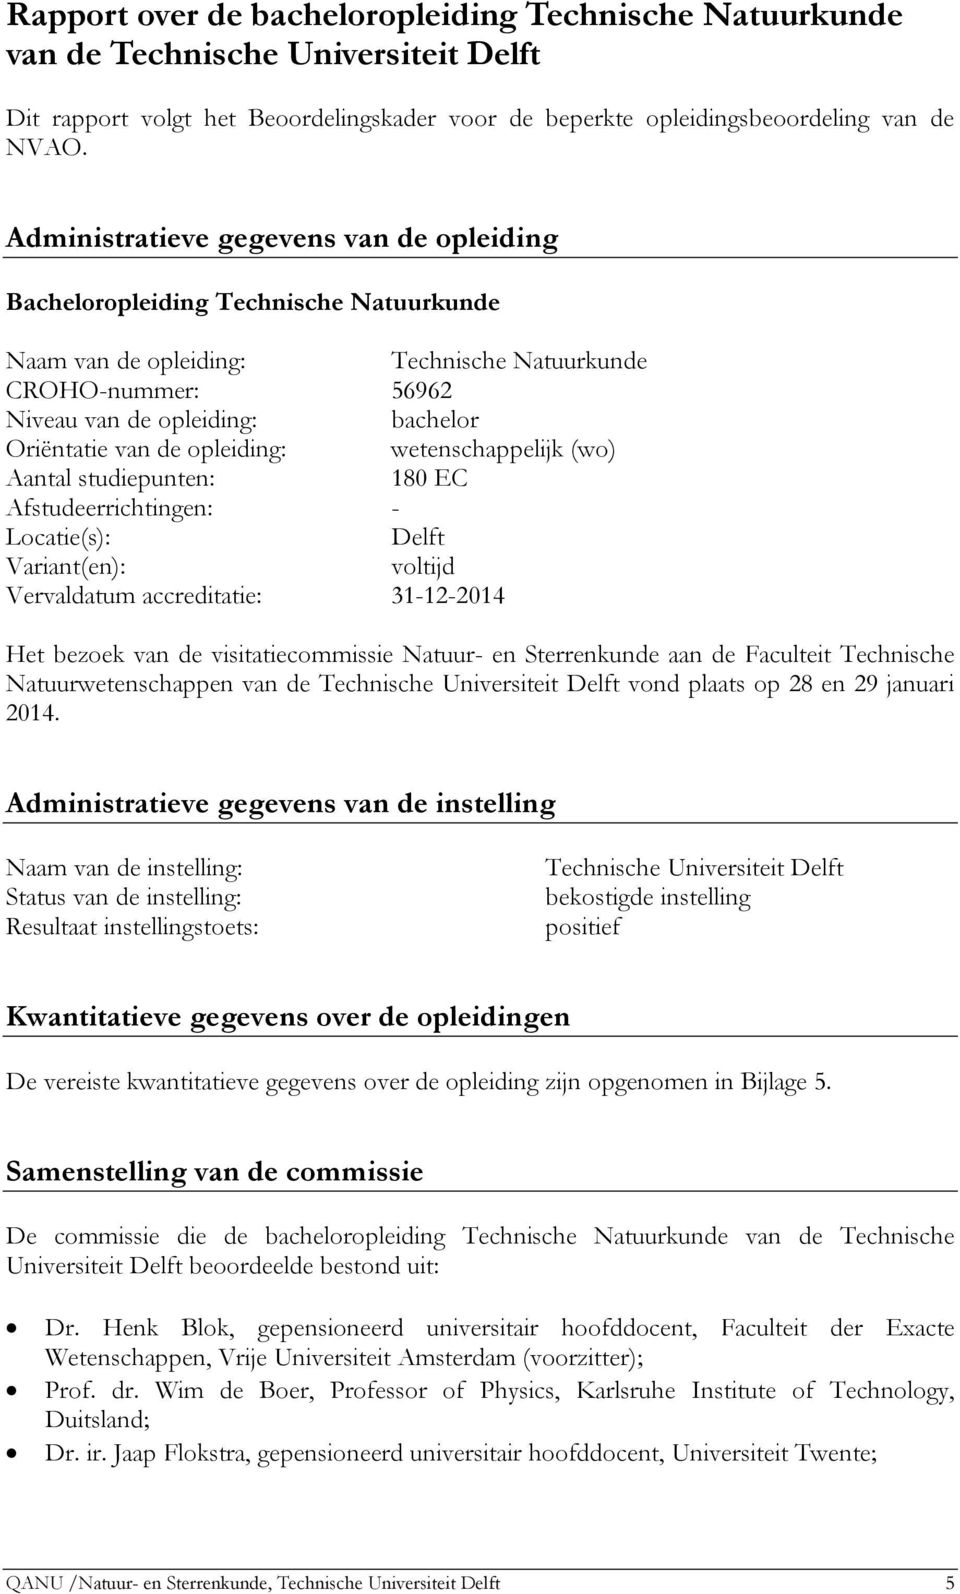 de opleiding: wetenschappelijk (wo) Aantal studiepunten: 180 EC Afstudeerrichtingen: - Locatie(s): Delft Variant(en): voltijd Vervaldatum accreditatie: 31-12-2014 Het bezoek van de visitatiecommissie